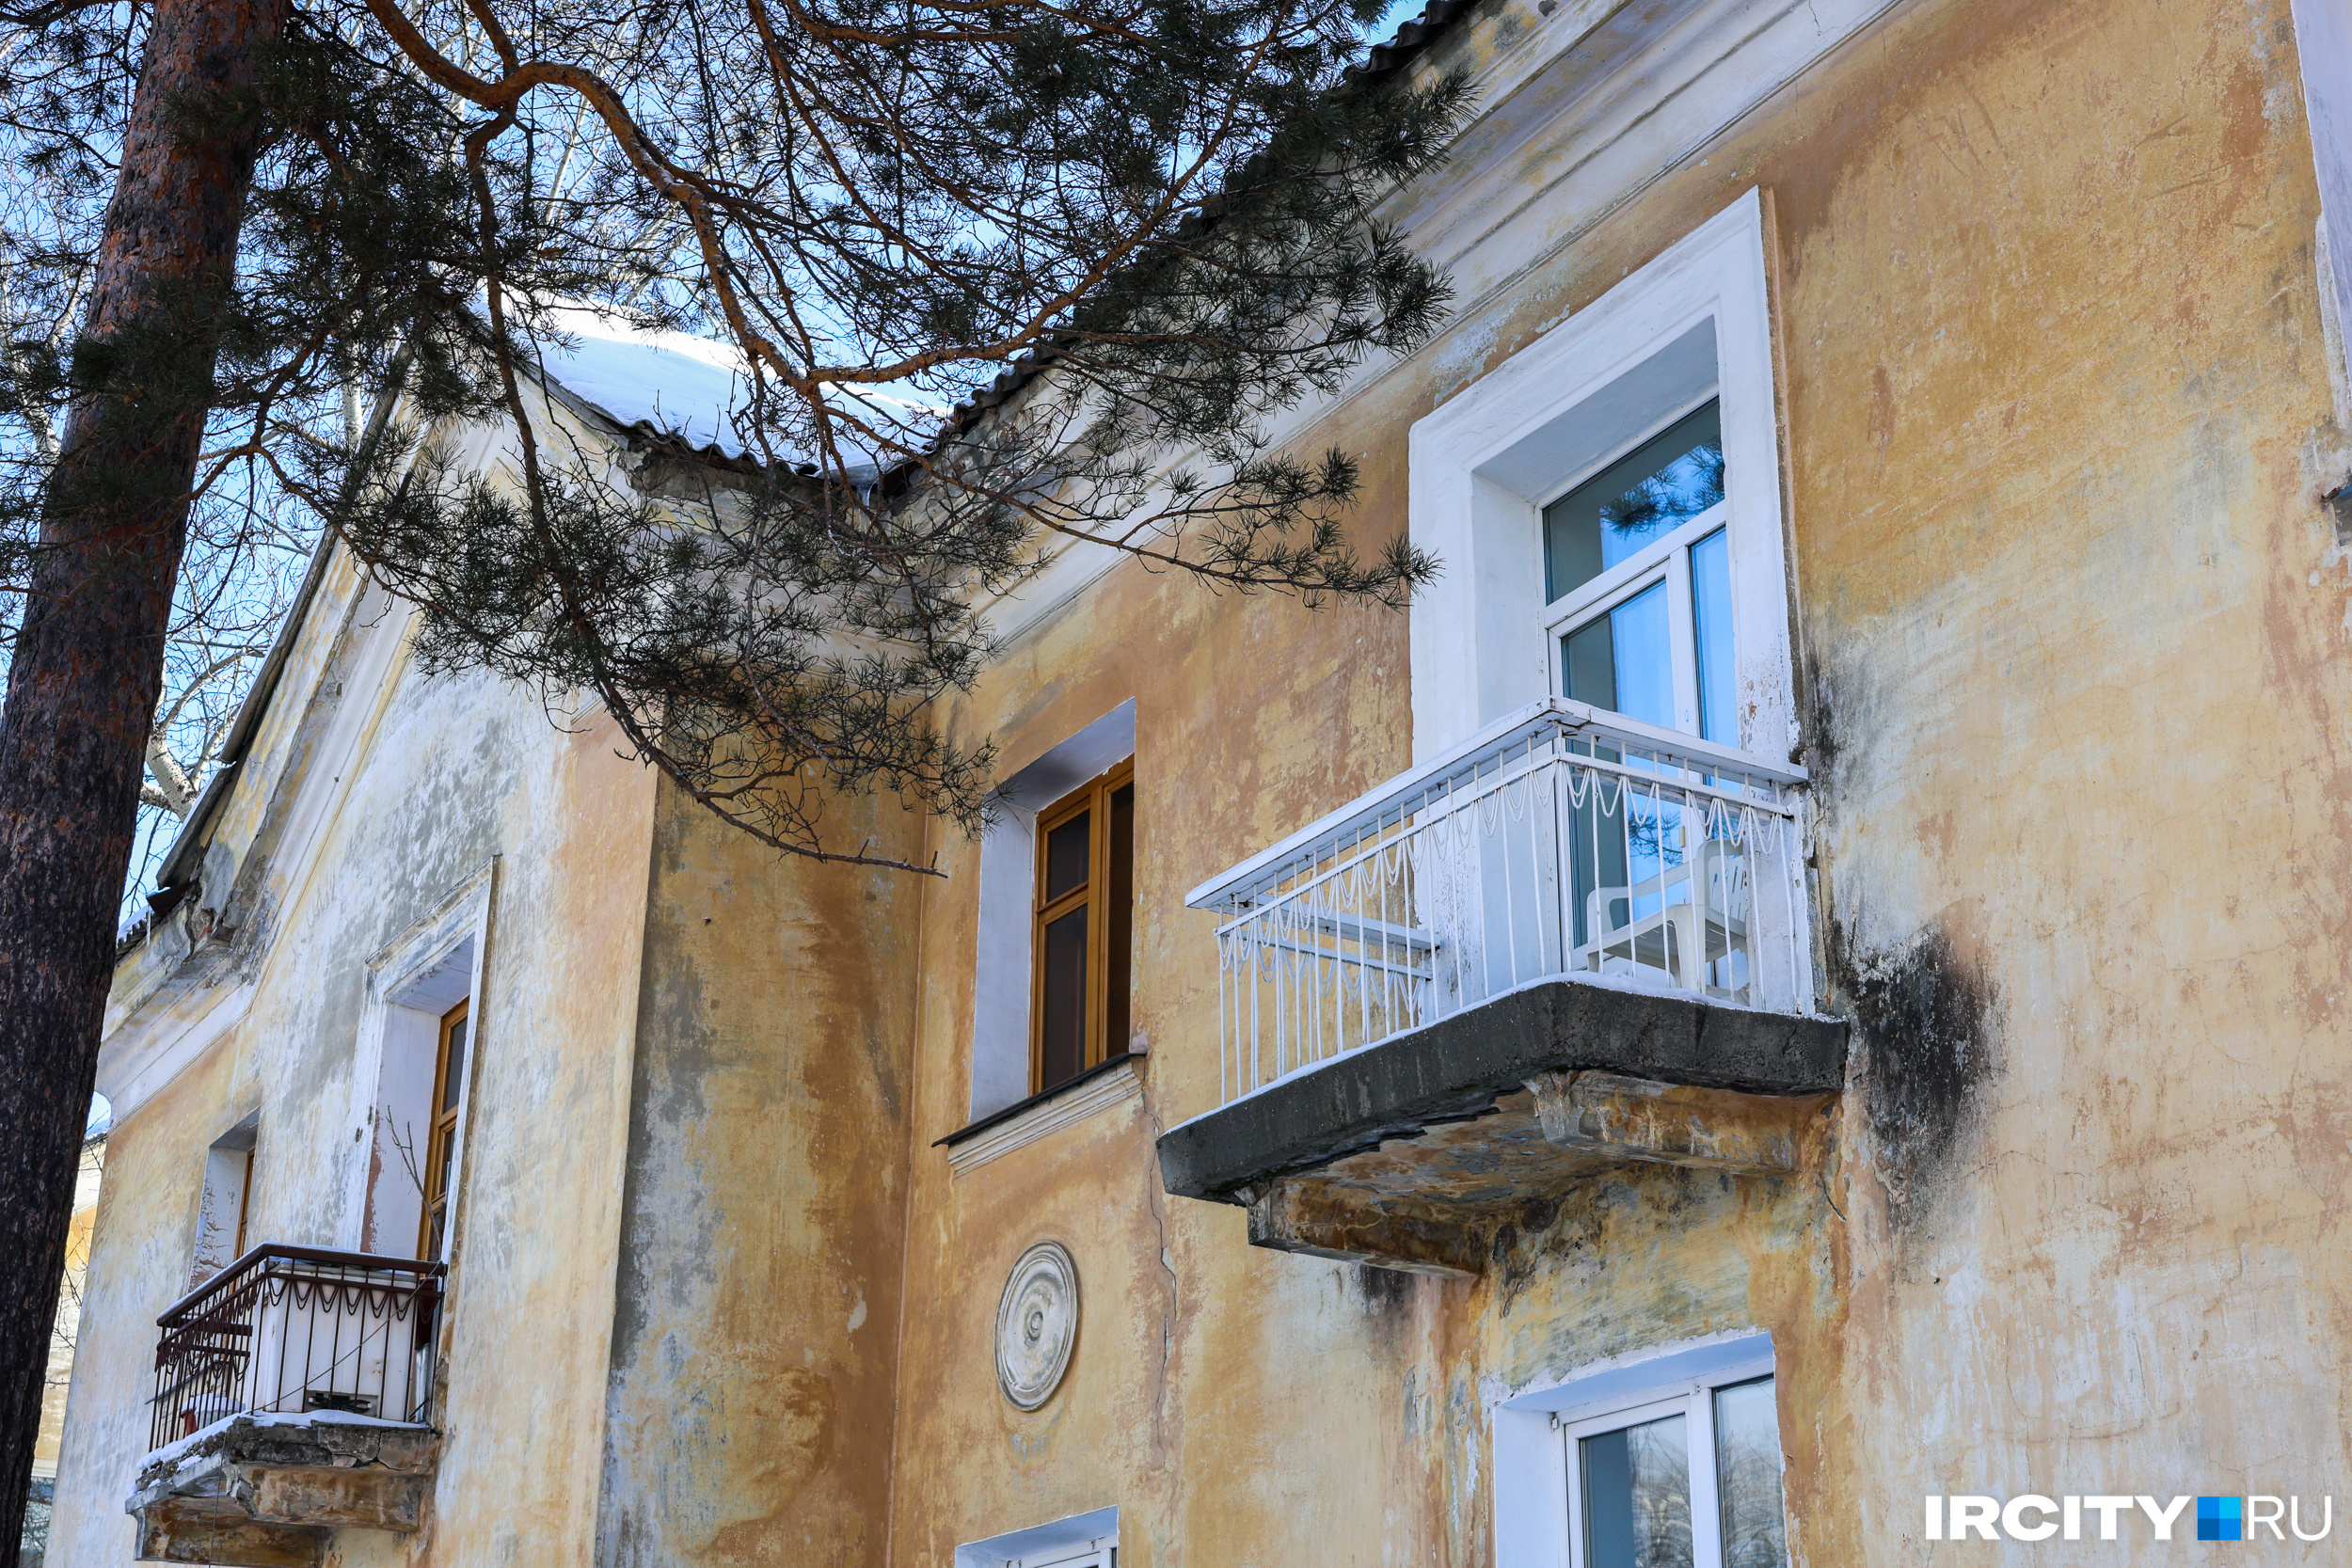 Маленькие домики, маленькие балкончики и сосны, сосны... Раньше их в Ангарске было много, сейчас — редкость